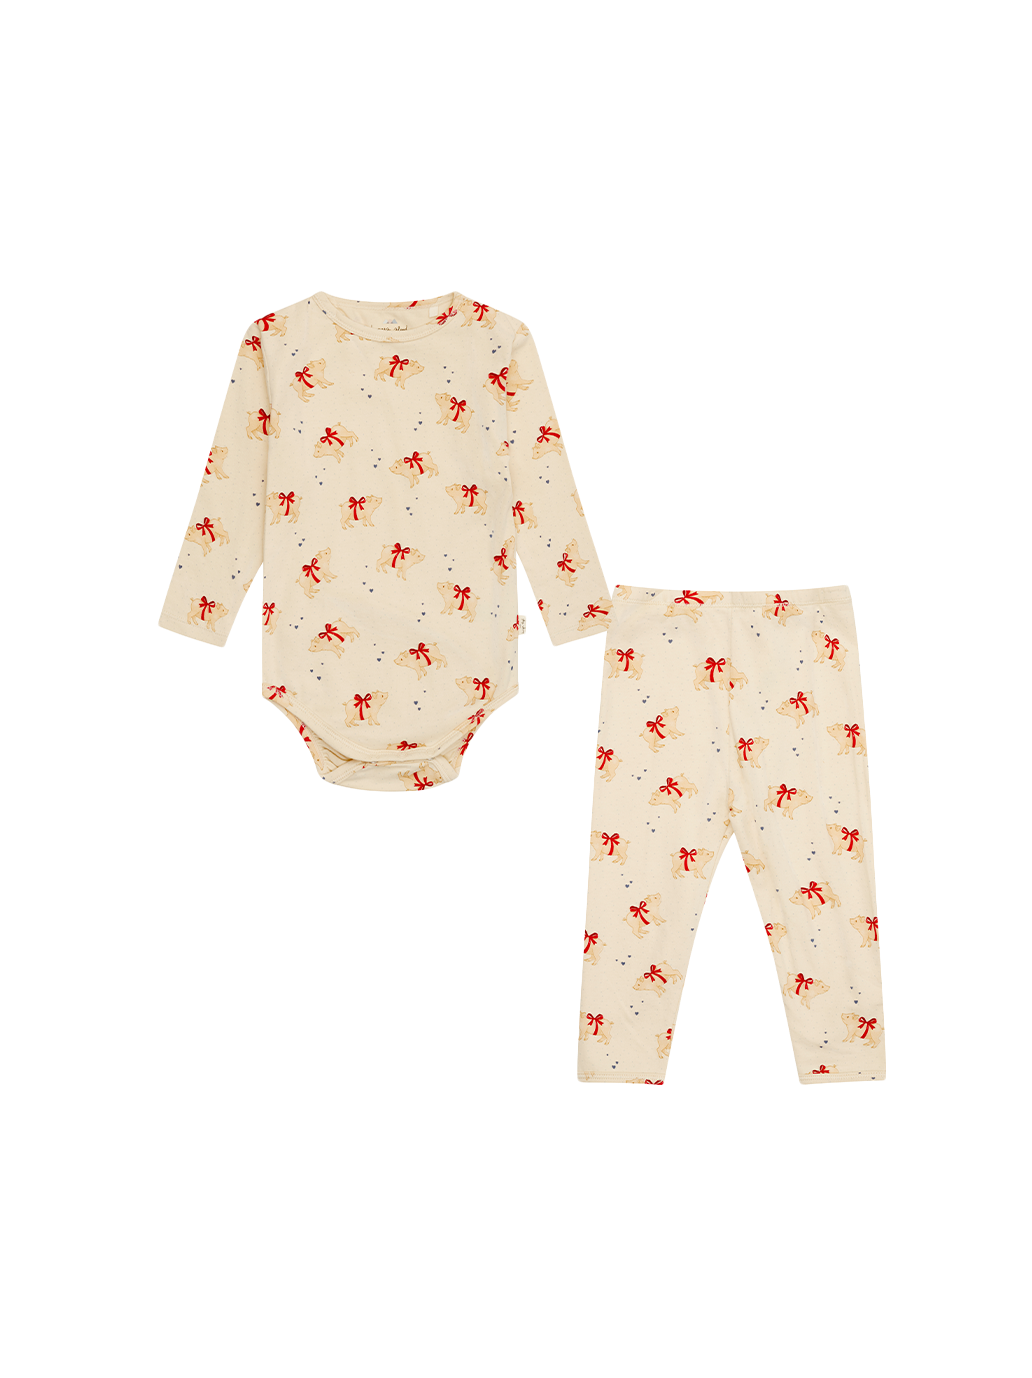 Christmas pajama set for babies